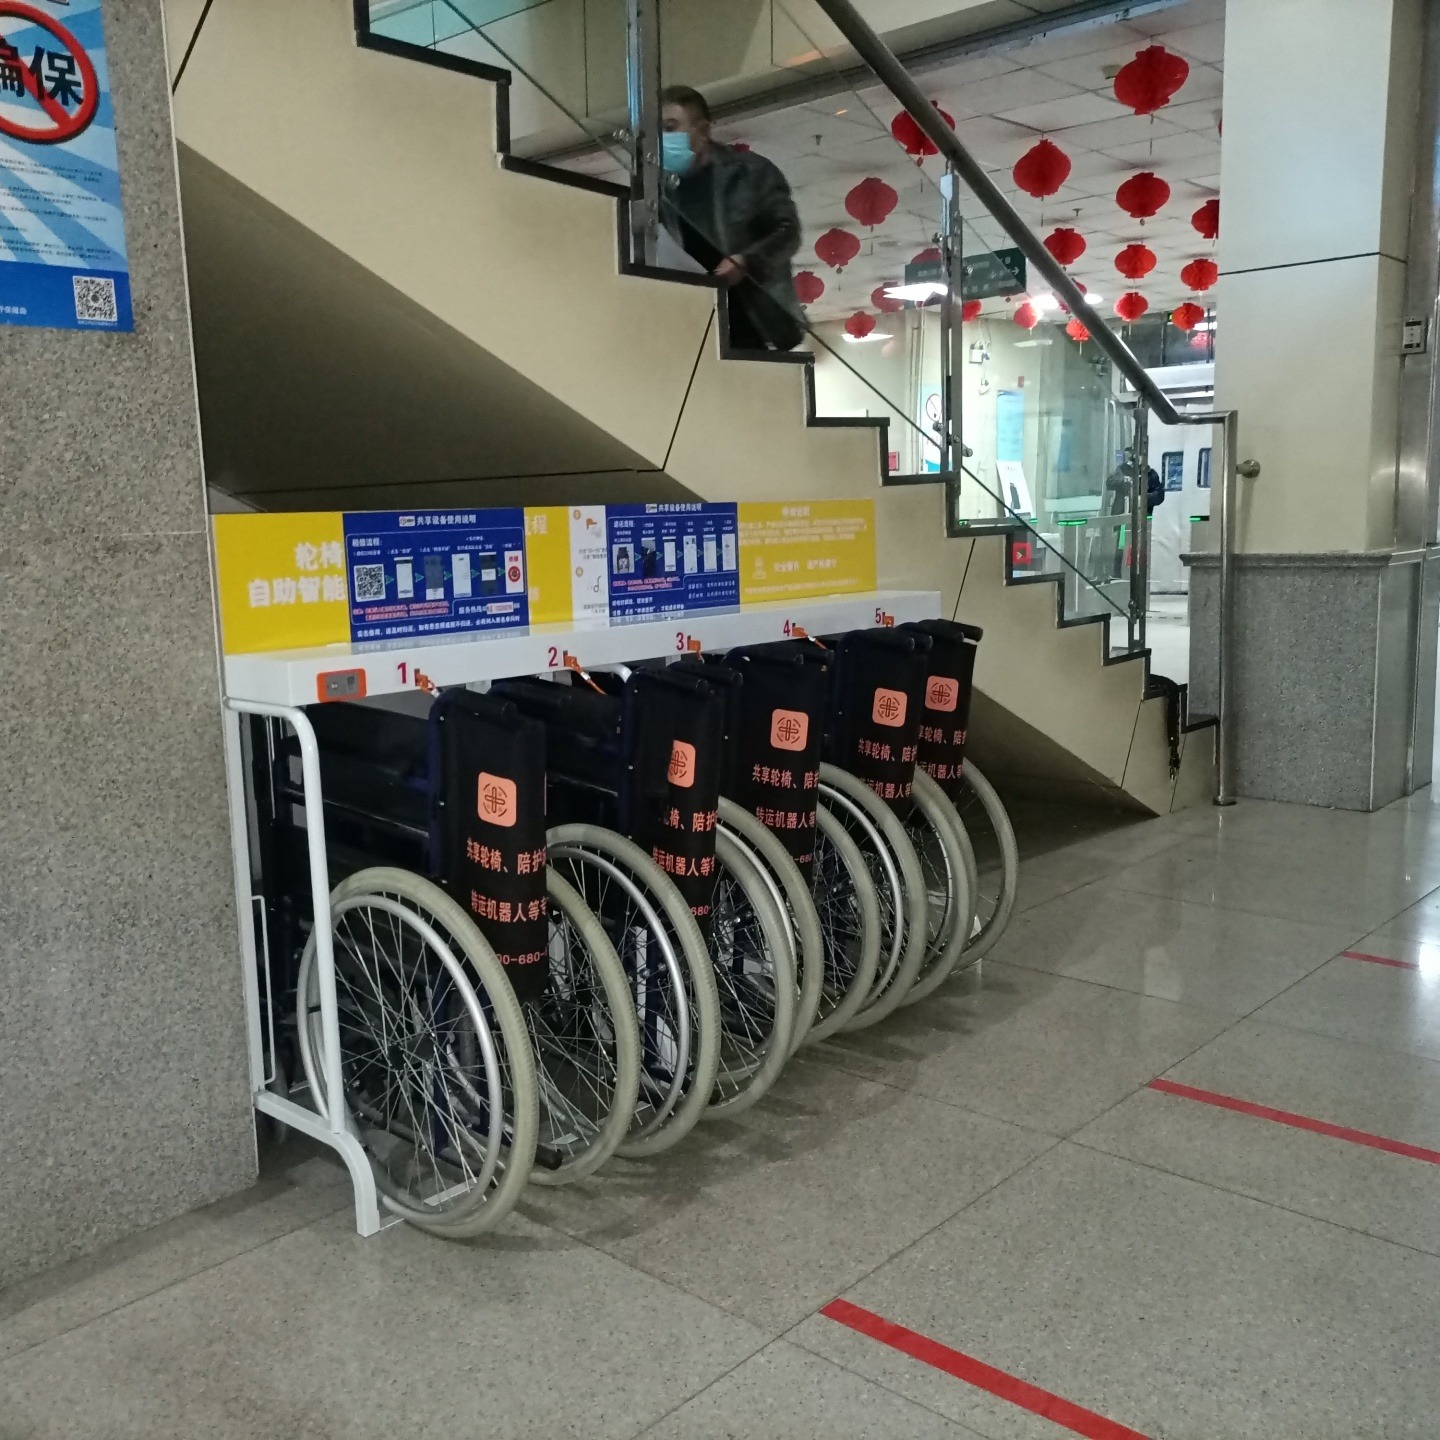 騰悅輪椅 掃碼輪椅鎖 002 免費投放共享輪椅 誠招有醫療資源共同創業者 醫院輪椅 利潤共同分配共同致富